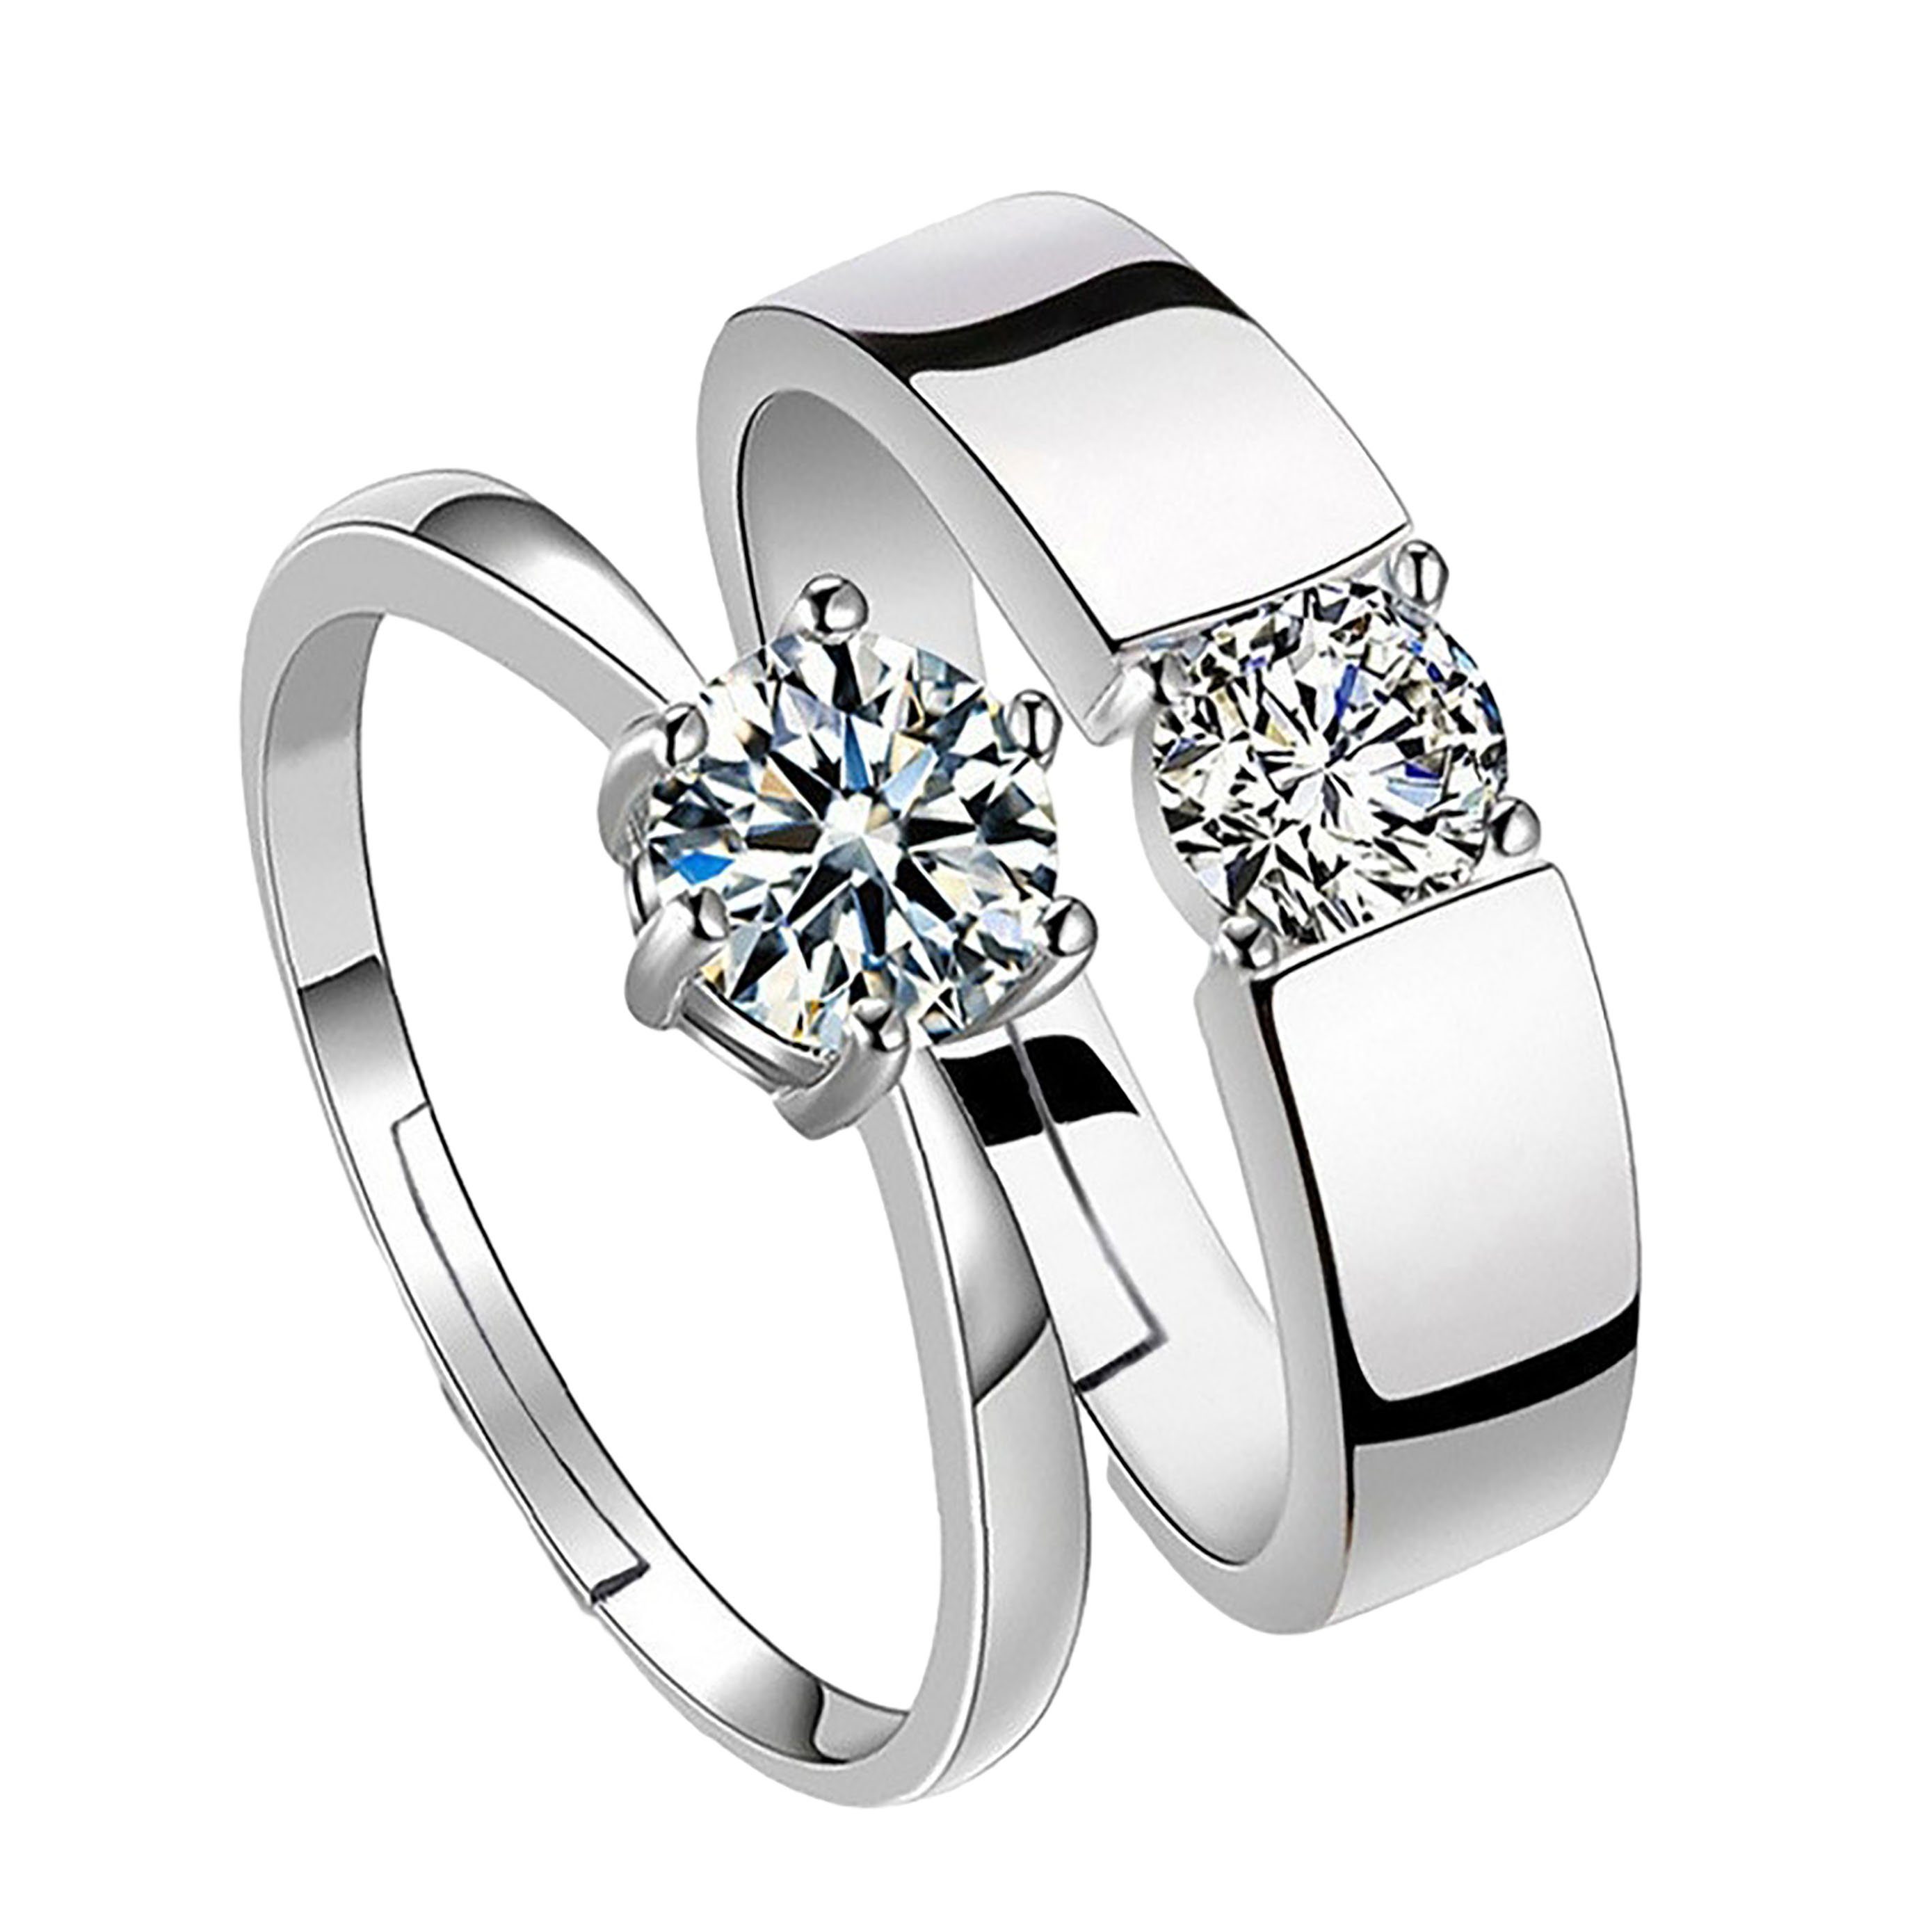 SRRINM Fingerring Kreative offene Hochzeitsbänder Diamantbänder (2-tlg)